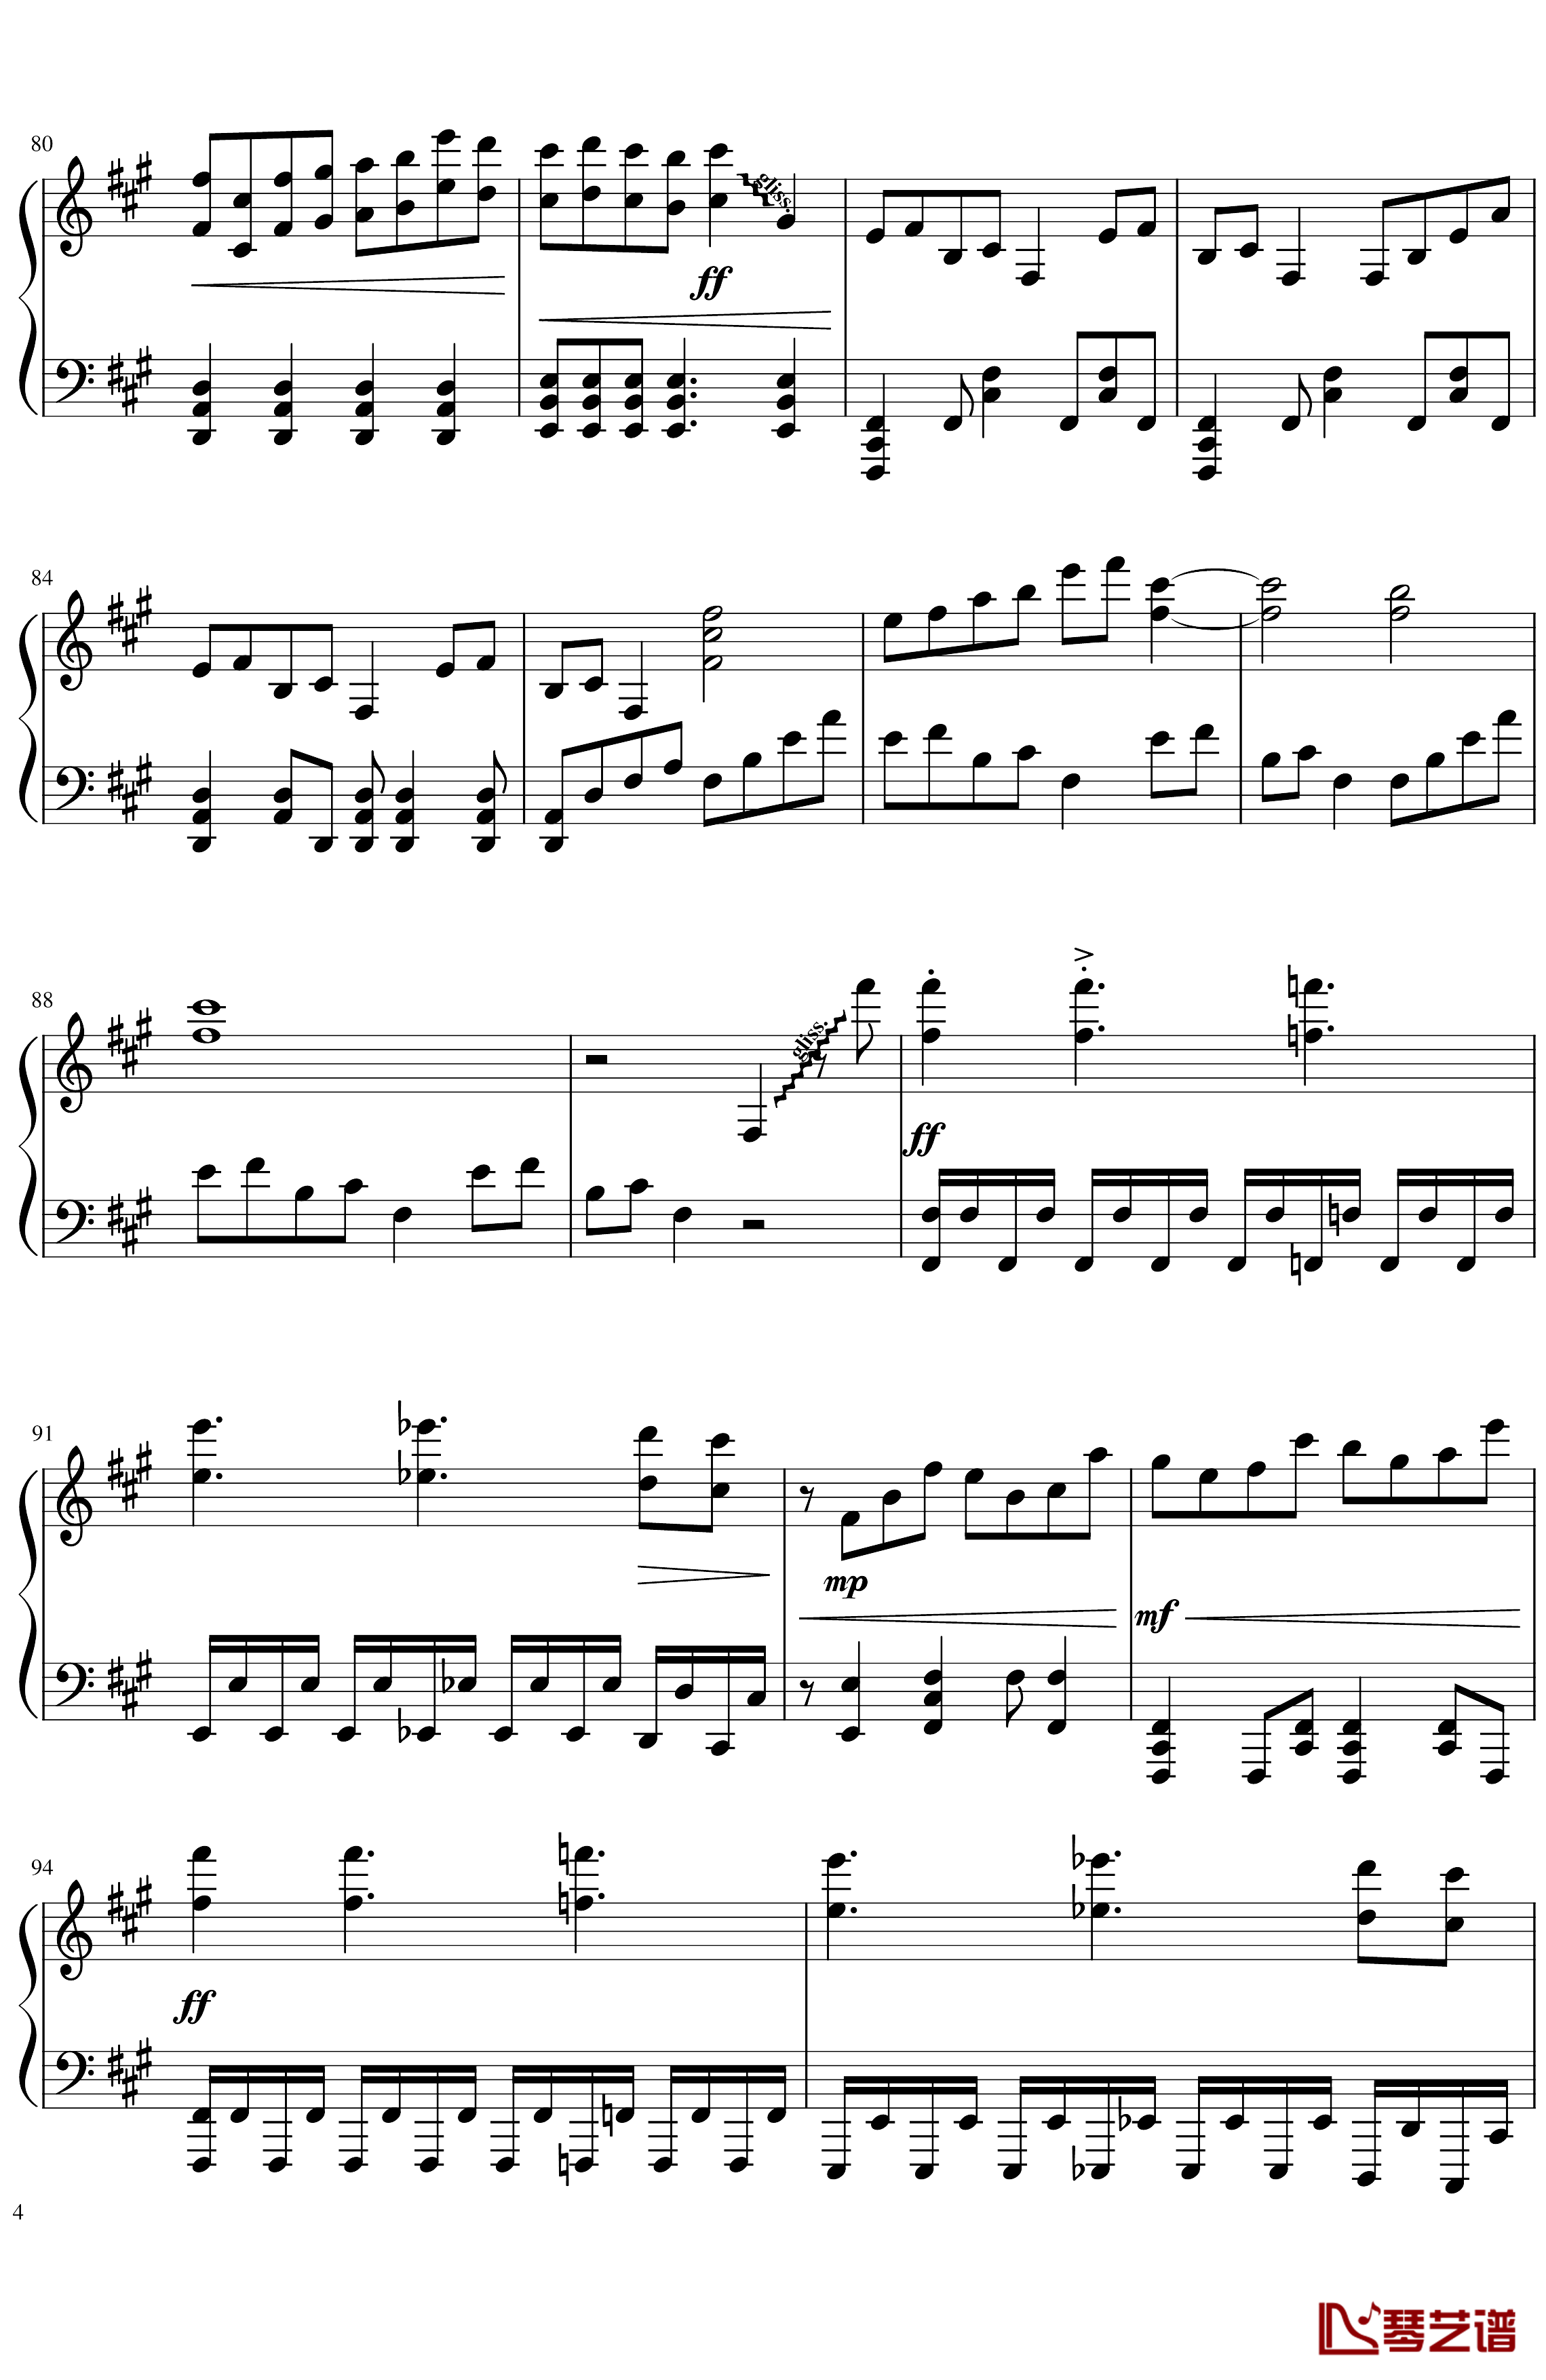 ソロモンの白椿钢琴谱-交响乐转钢琴版-碧蓝航线4